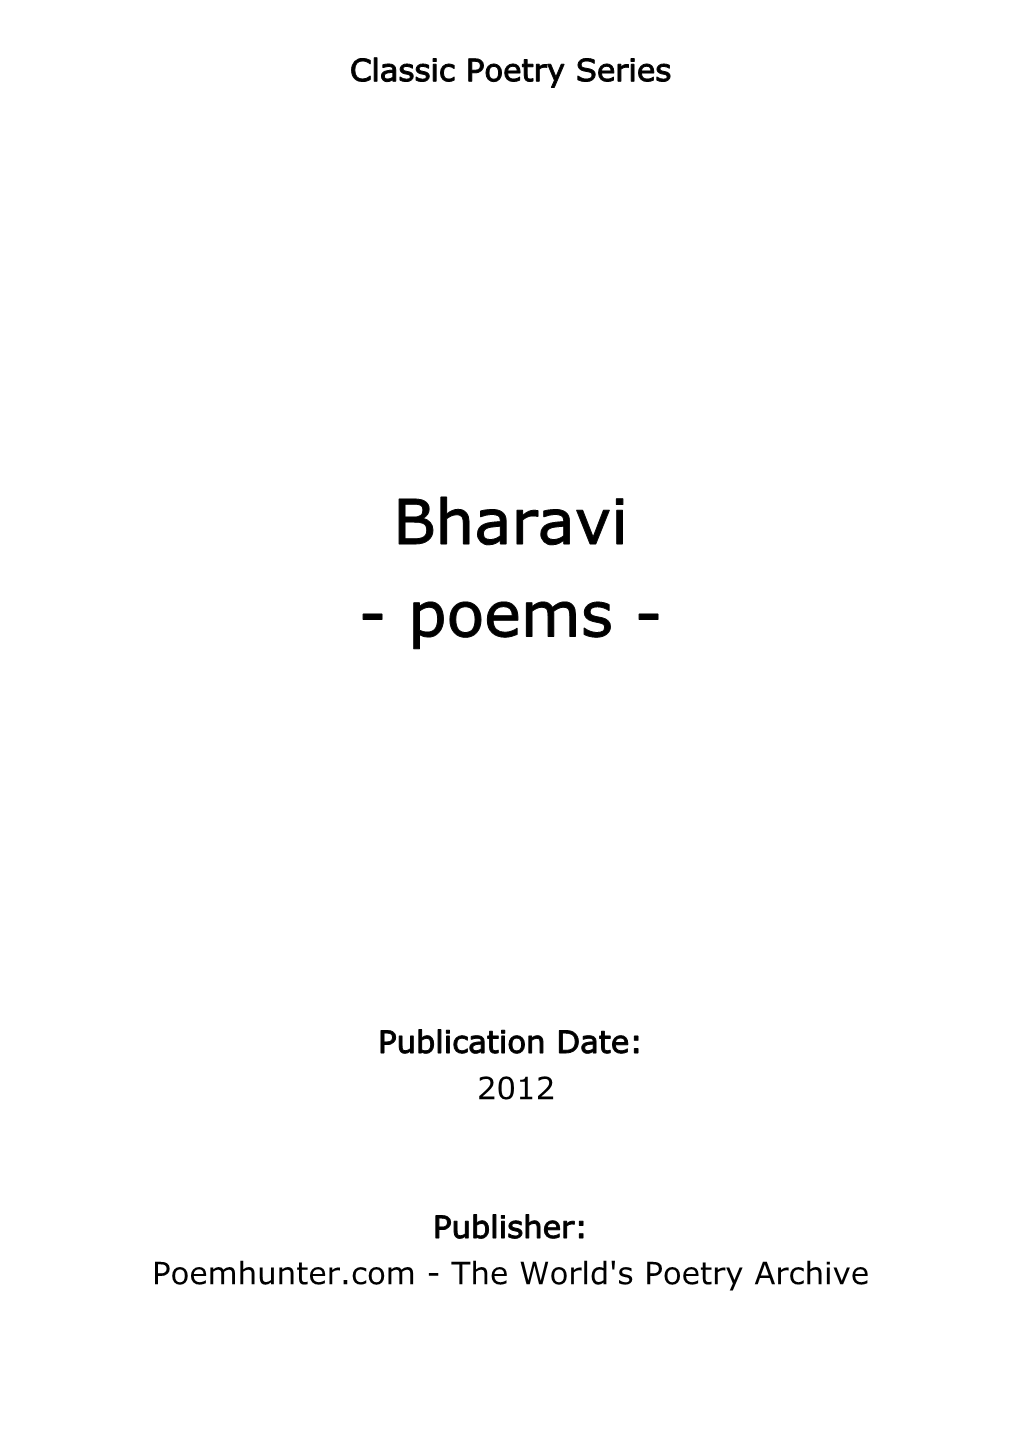 Bharavi - Poems